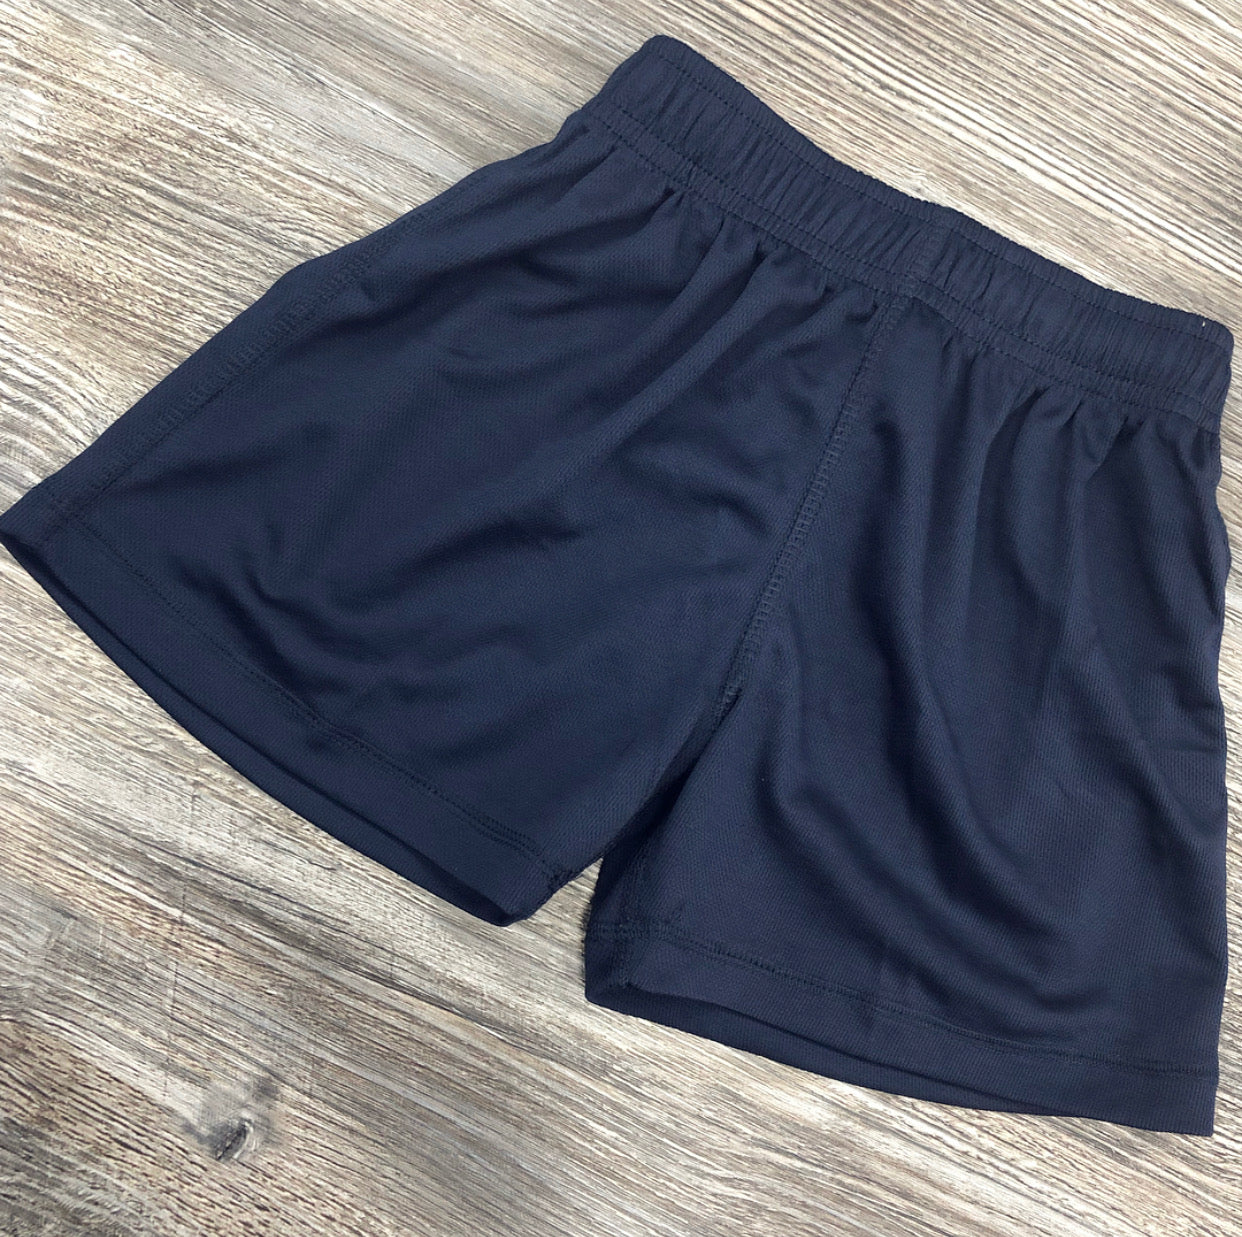 Navy Boys PE Shorts